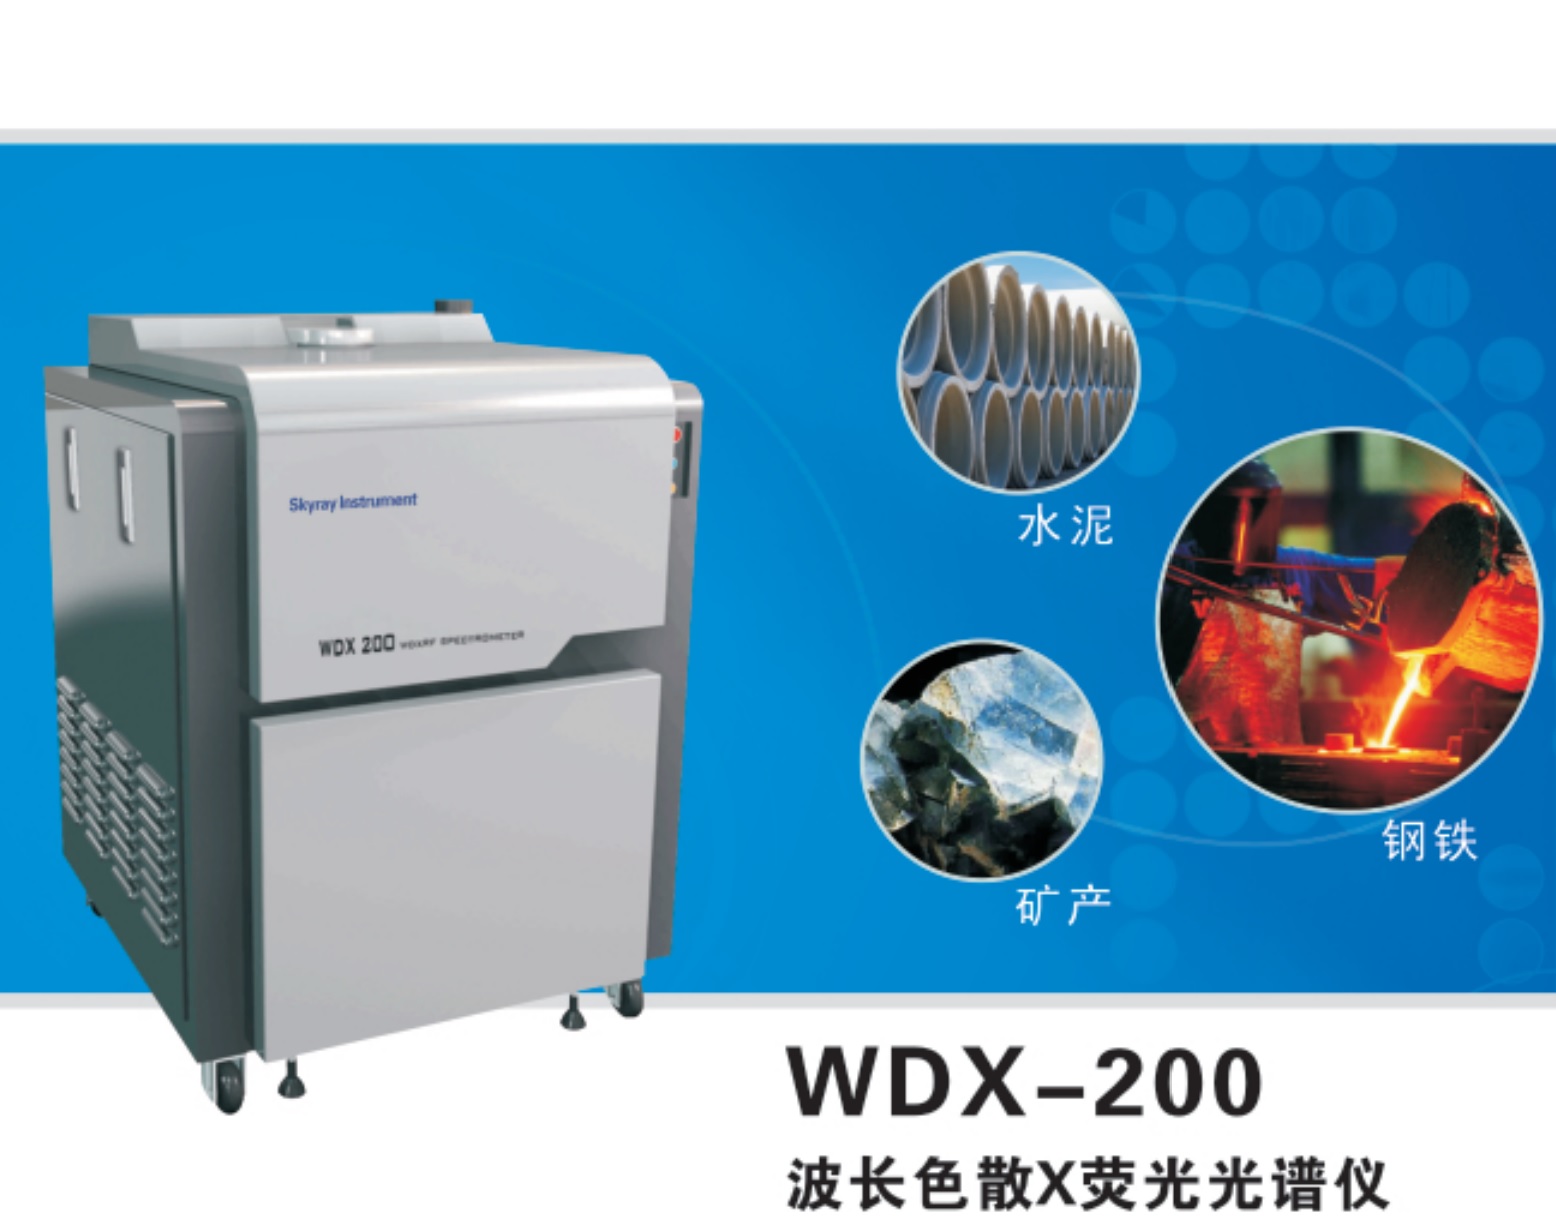 Jiangsu Skyray Instrument Co., Ltd.-Skyray Instrument WDX200